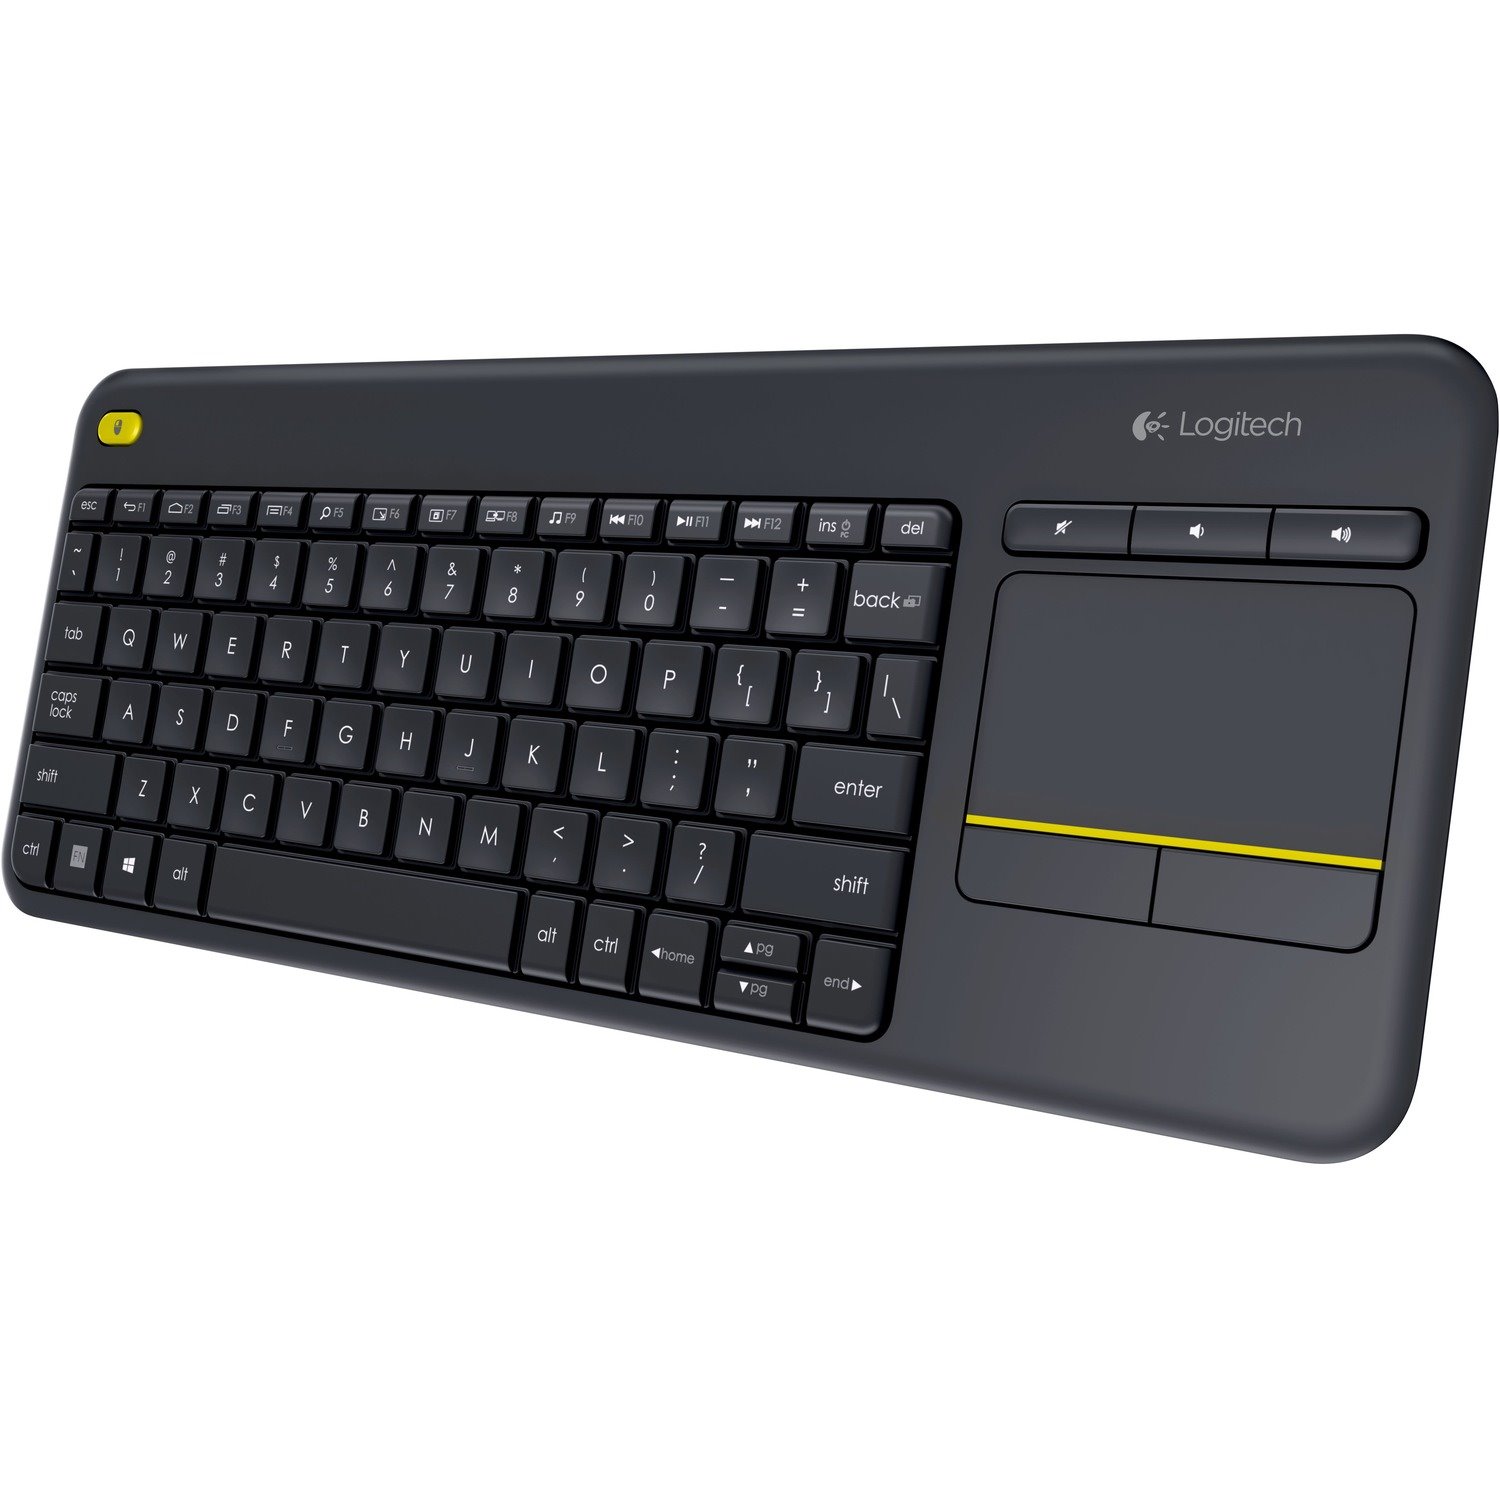 Logitech K400 Plus Keyboard - Wireless Connectivity - USB Interface - TouchPad - QWERTY Layout - Black